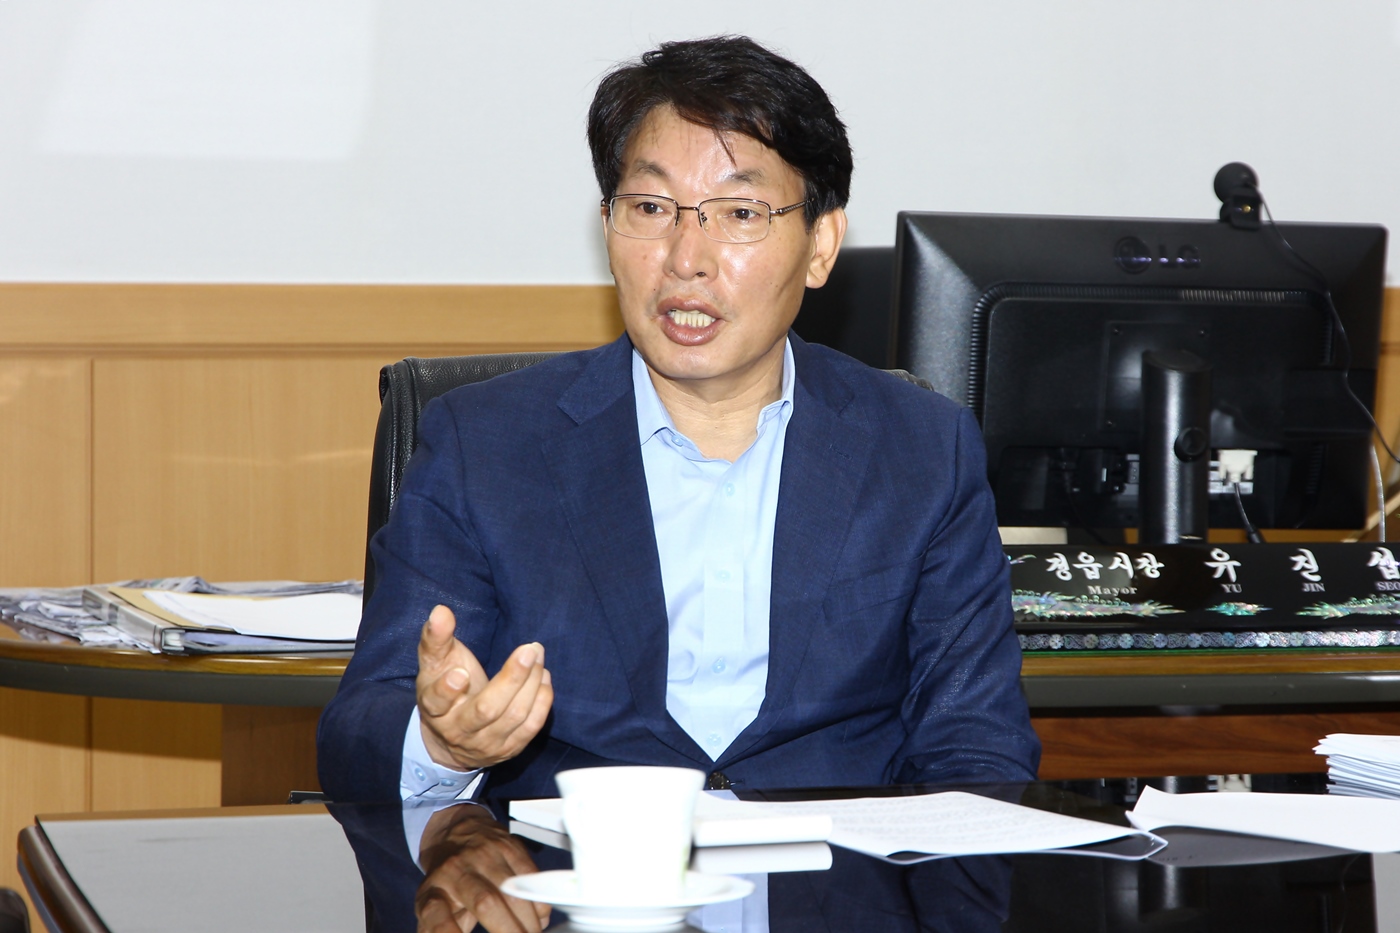 유진섭 시장이 지역현안 해결을 위해 과학기술정보통신부 설득에 나섰다.